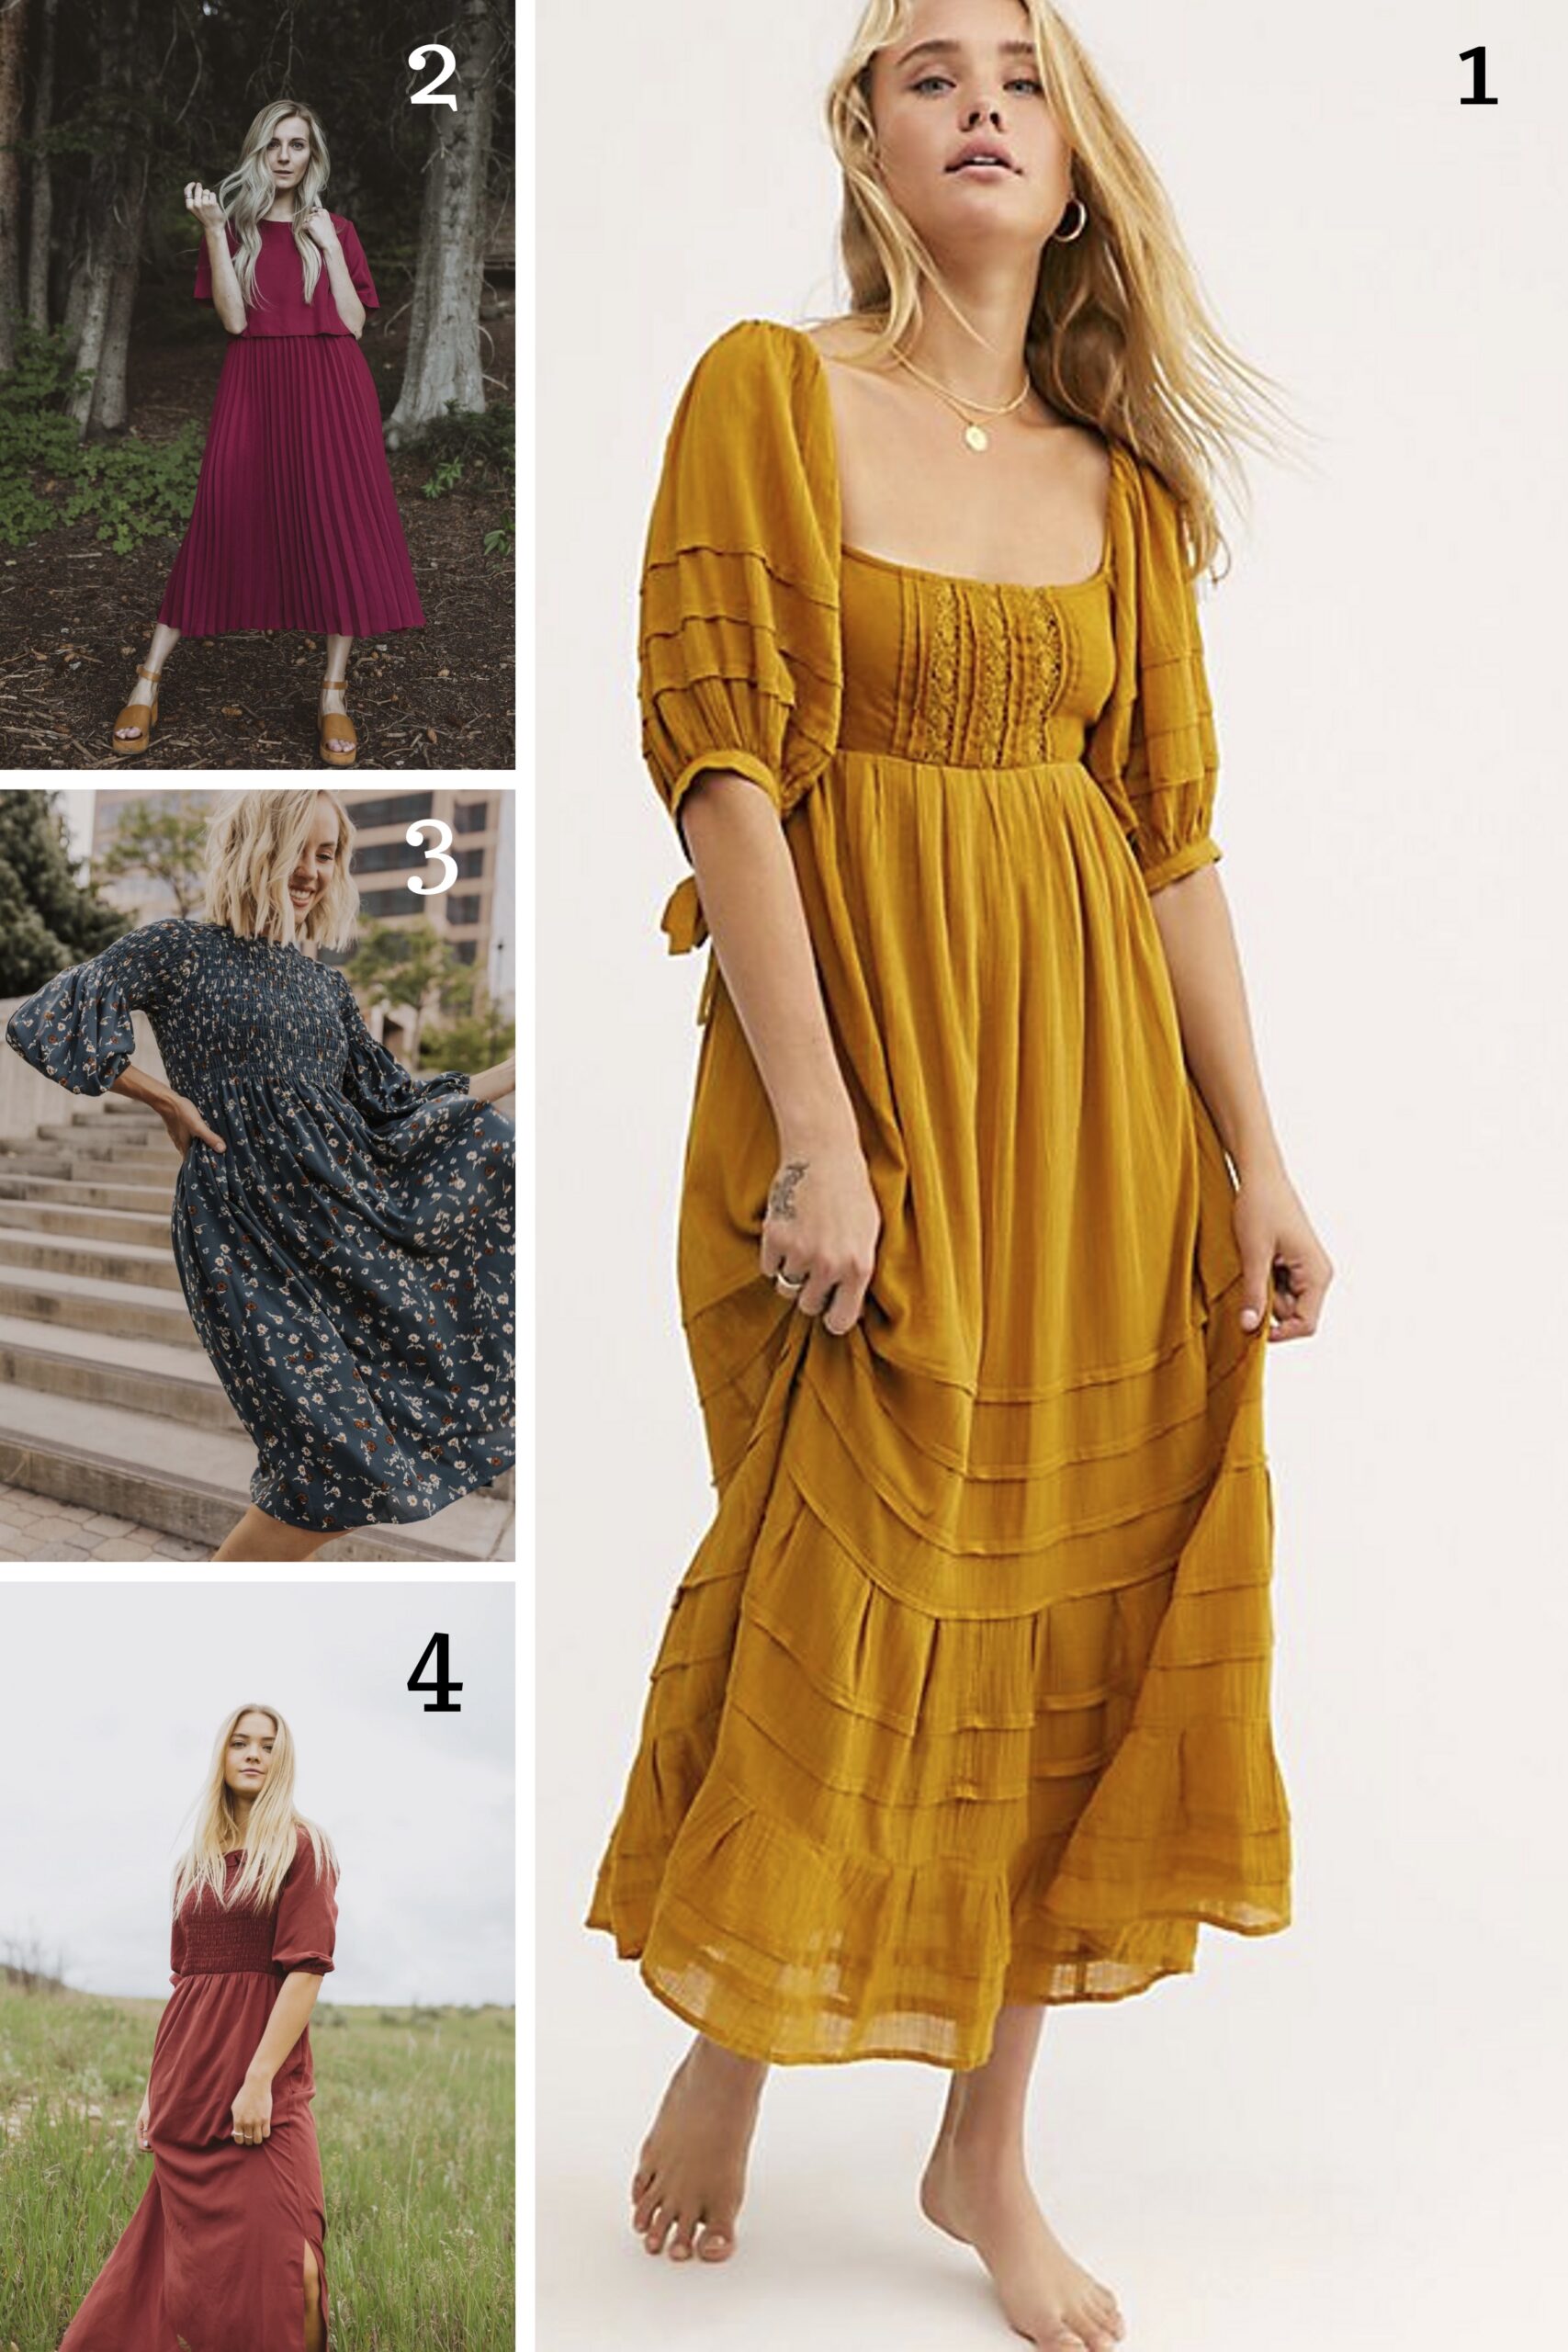 1. Yellow Free People Dress || 2. Burgundy Bib Dress || 3. Blue Smocked Dress || 4. Ruffle Maxi dress